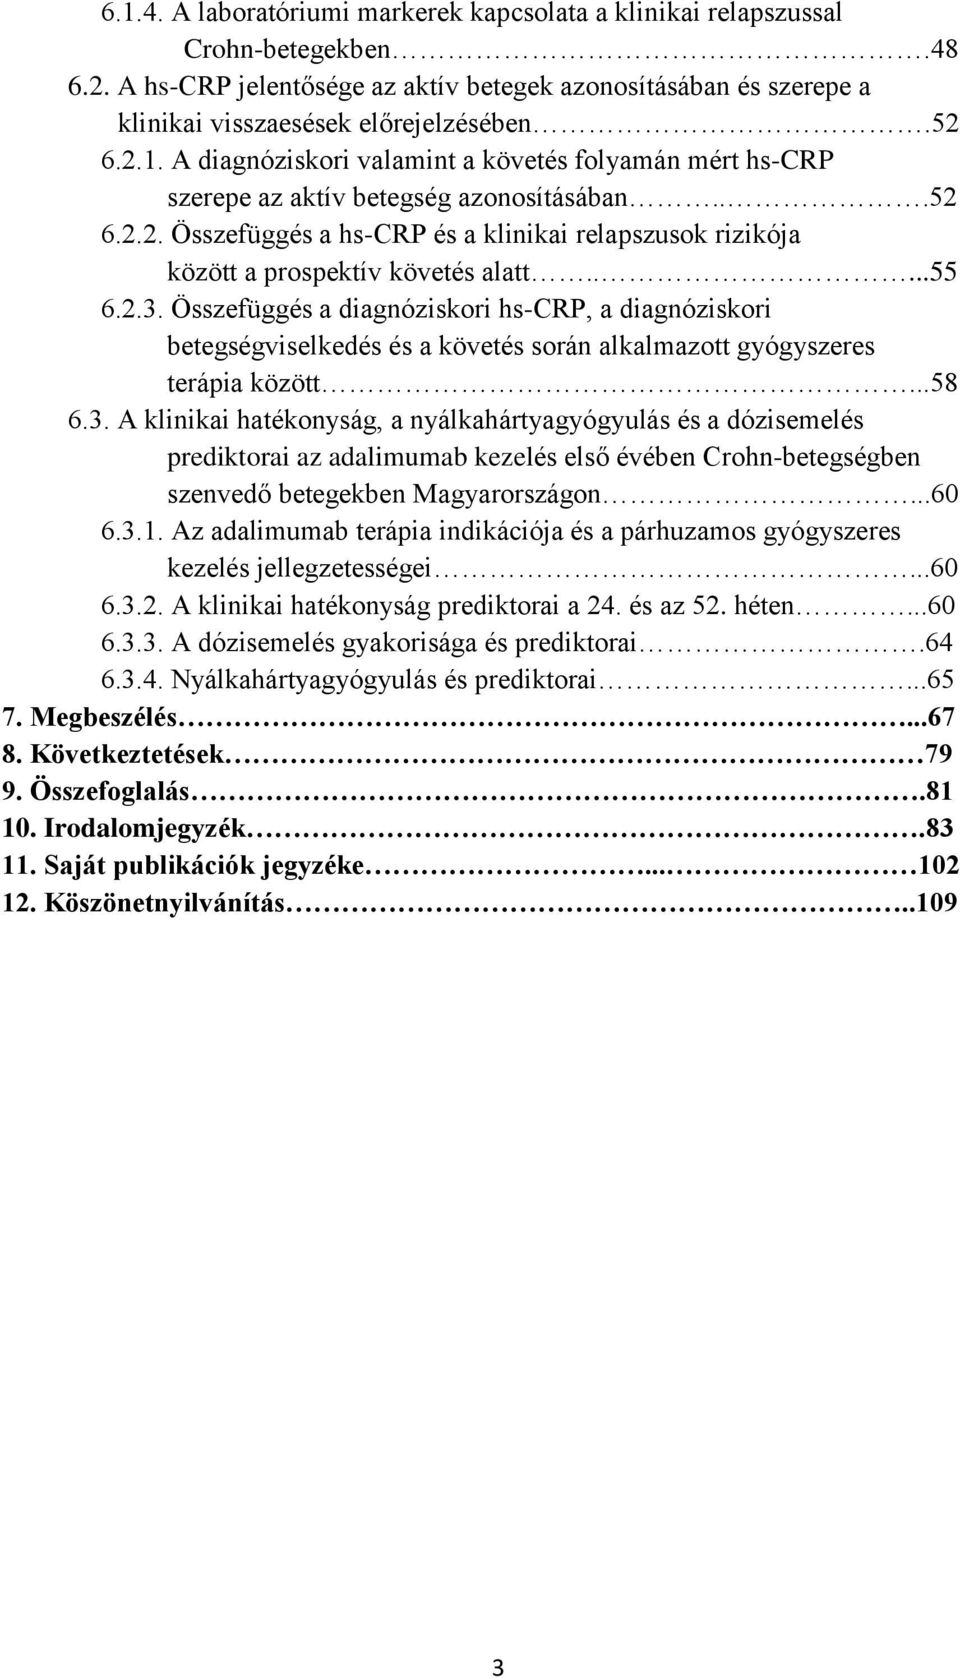 ....55 6.2.3. Összefüggés a diagnóziskori hs-crp, a diagnóziskori betegségviselkedés és a követés során alkalmazott gyógyszeres terápia között...58 6.3. A klinikai hatékonyság, a nyálkahártyagyógyulás és a dózisemelés prediktorai az adalimumab kezelés első évében Crohn-betegségben szenvedő betegekben Magyarországon.